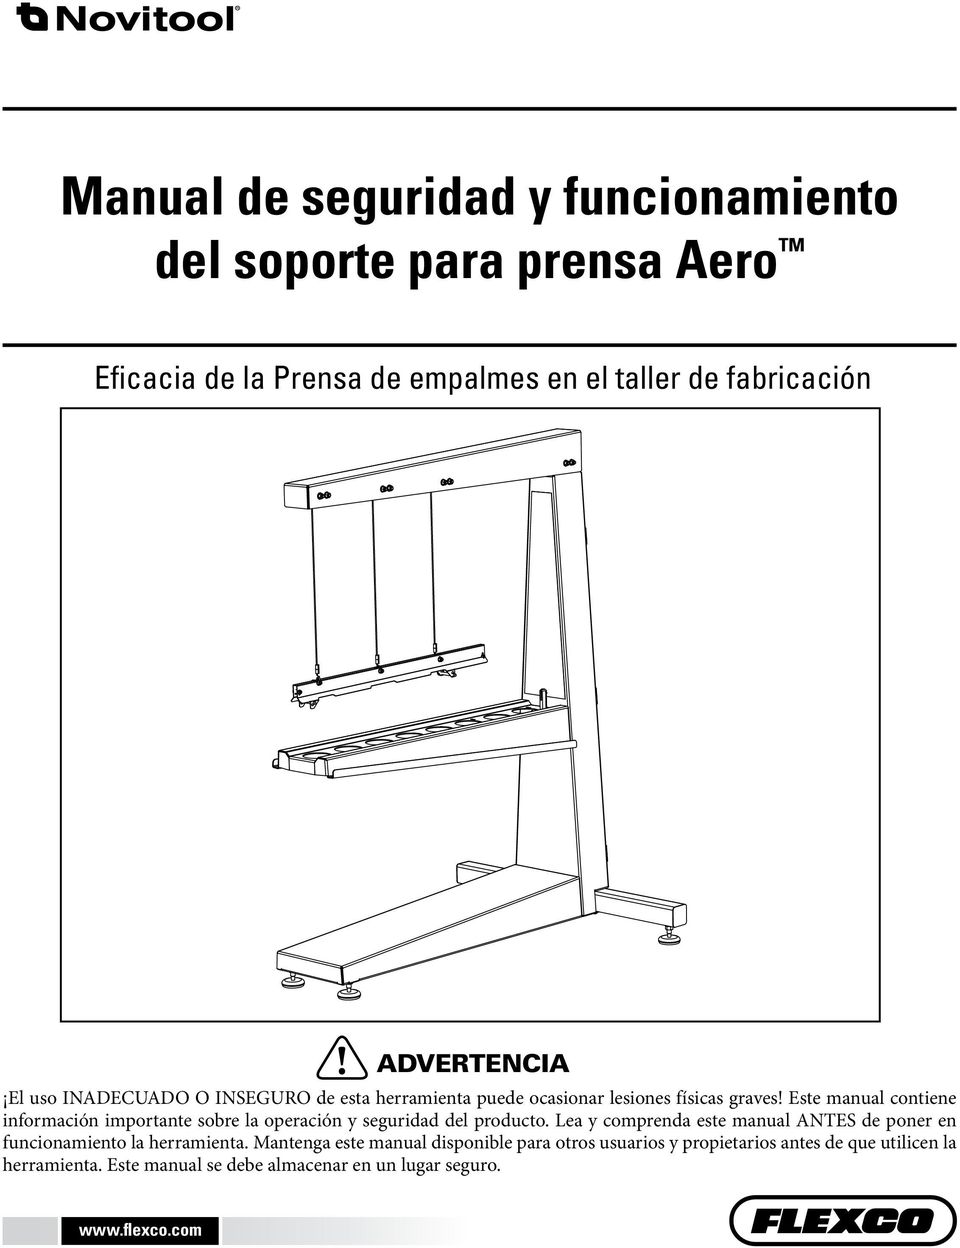 Este manual contiene información importante sobre la operación y seguridad del producto.